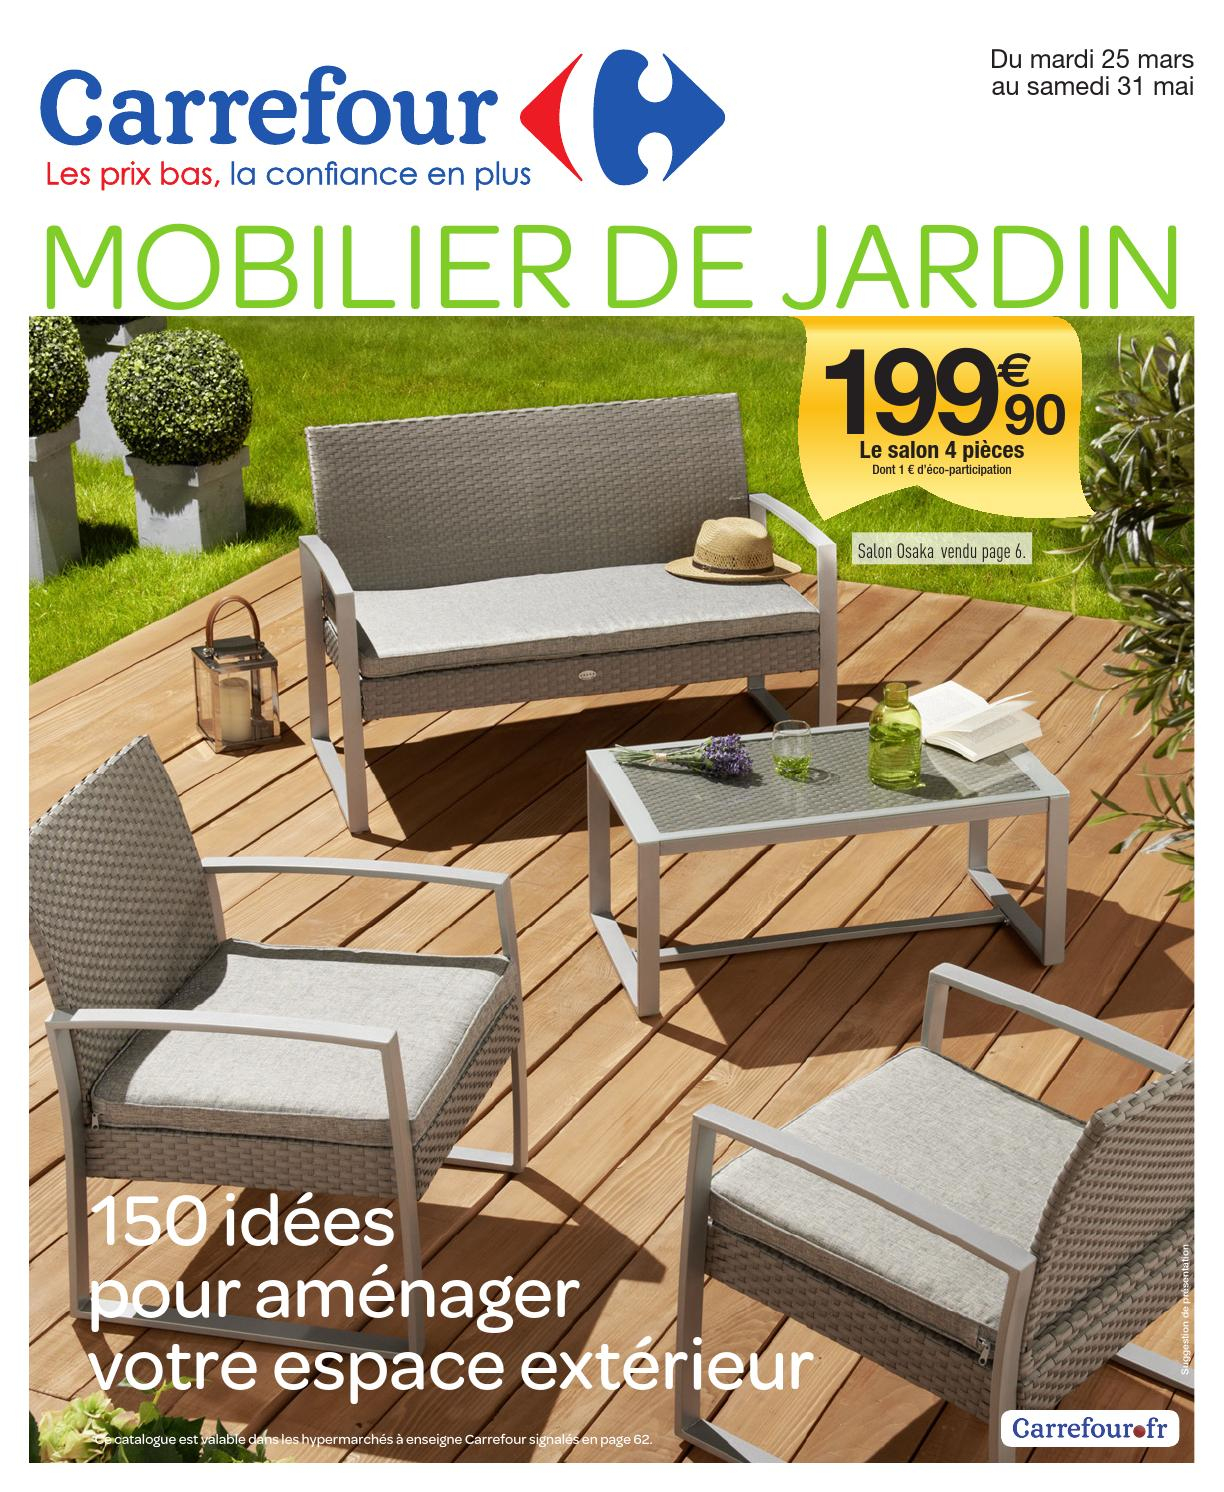 Catalogue Carrefour - 25.03-31.05.2014 By Joe Monroe - Issuu intérieur Salon De Jardin Leclerc 199 Euros